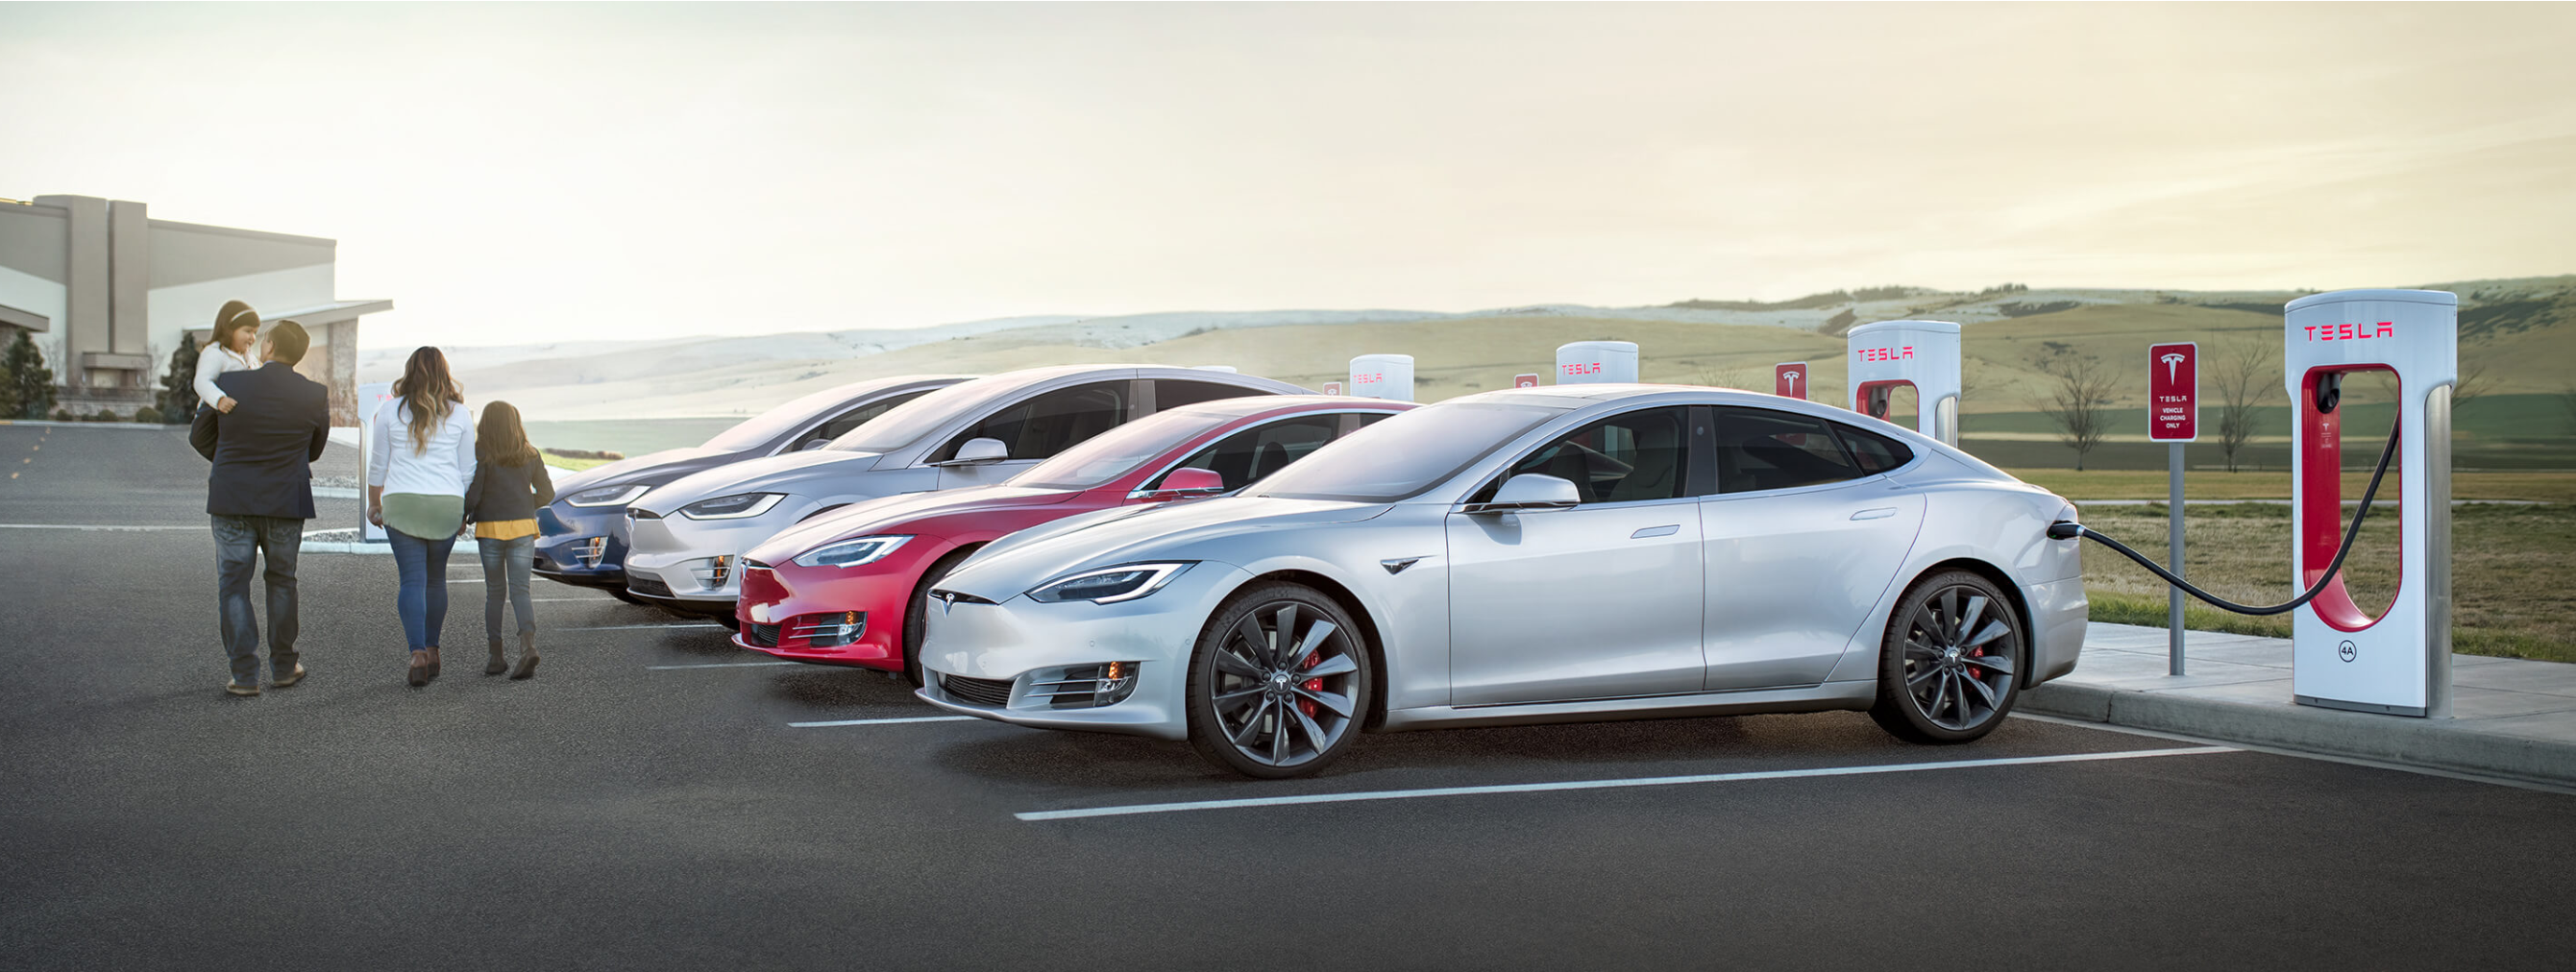 Tesla fast charger parking